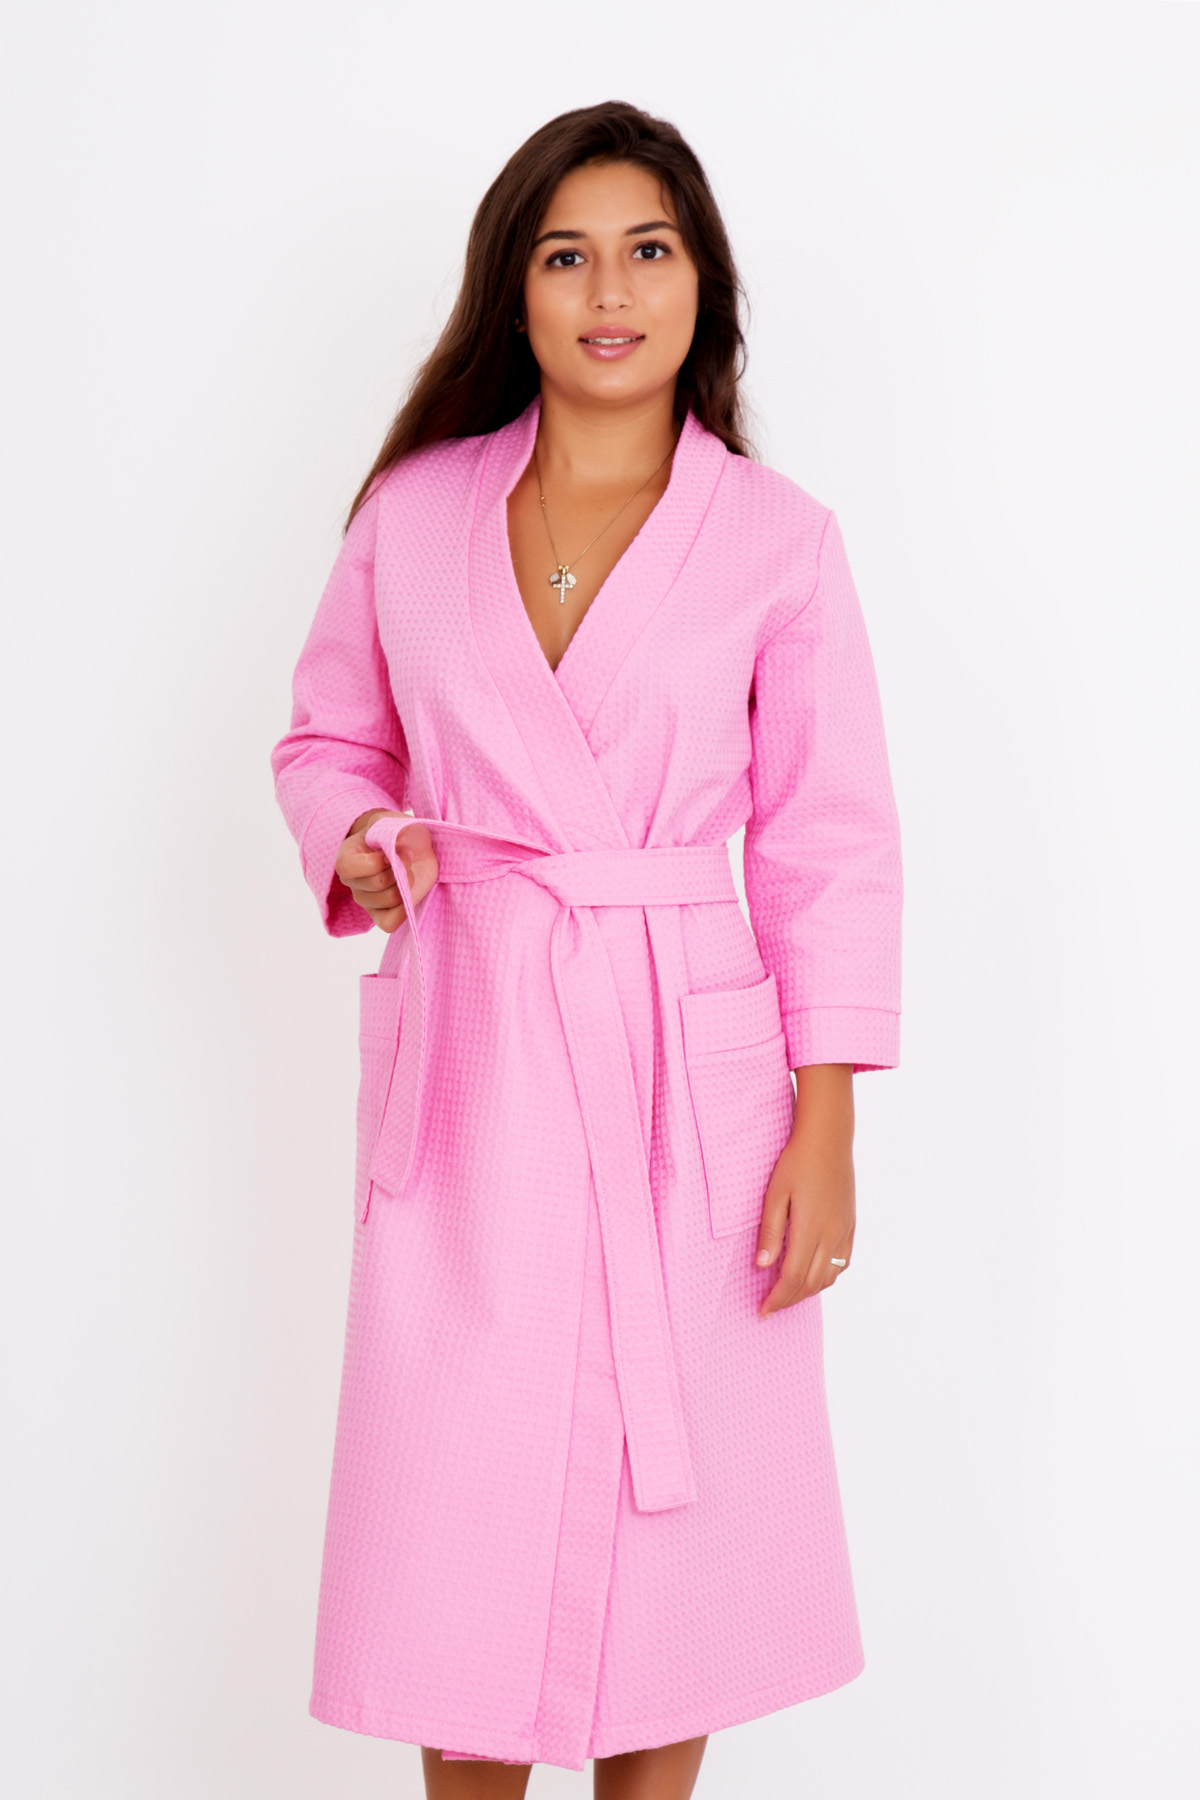 Купить легкий халат. Банный халат. Халат банный женский. Халат банный розовый.